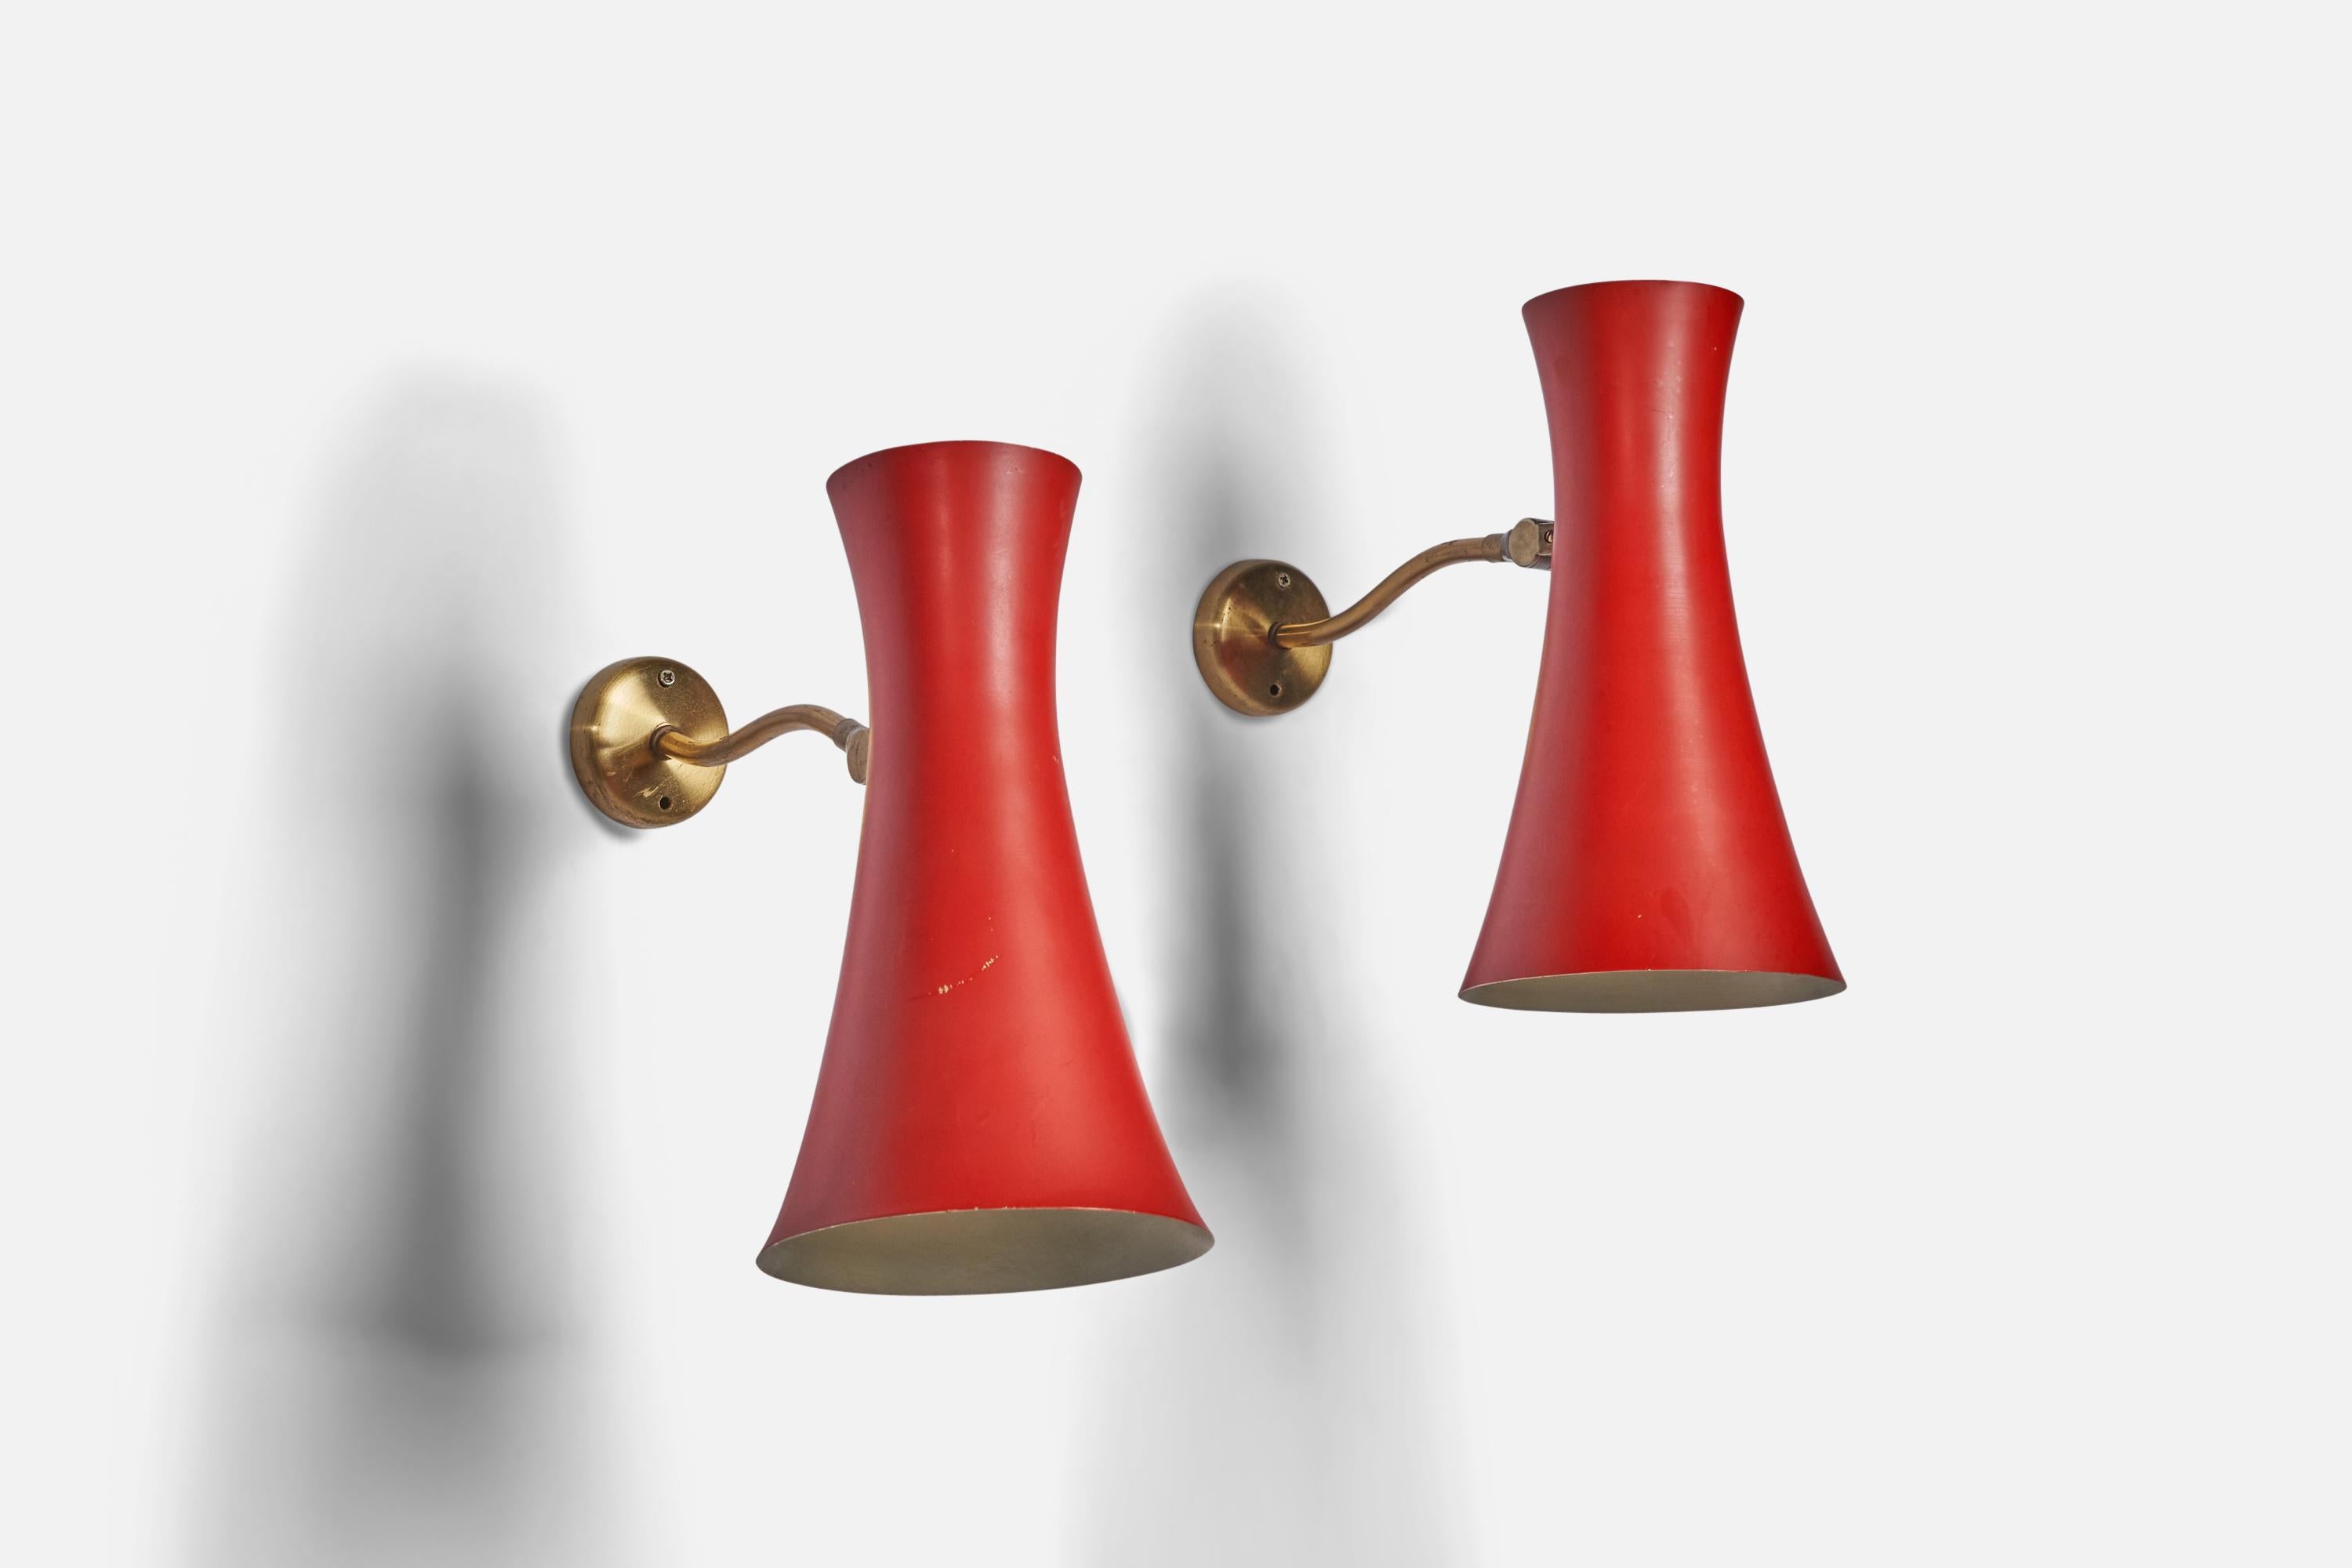 Ein Paar verstellbare Wandleuchten aus Messing und rot lackiertem Metall, entworfen und hergestellt in Schweden, ca. 1950er Jahre.

Gesamtabmessungen (Zoll): 10,55